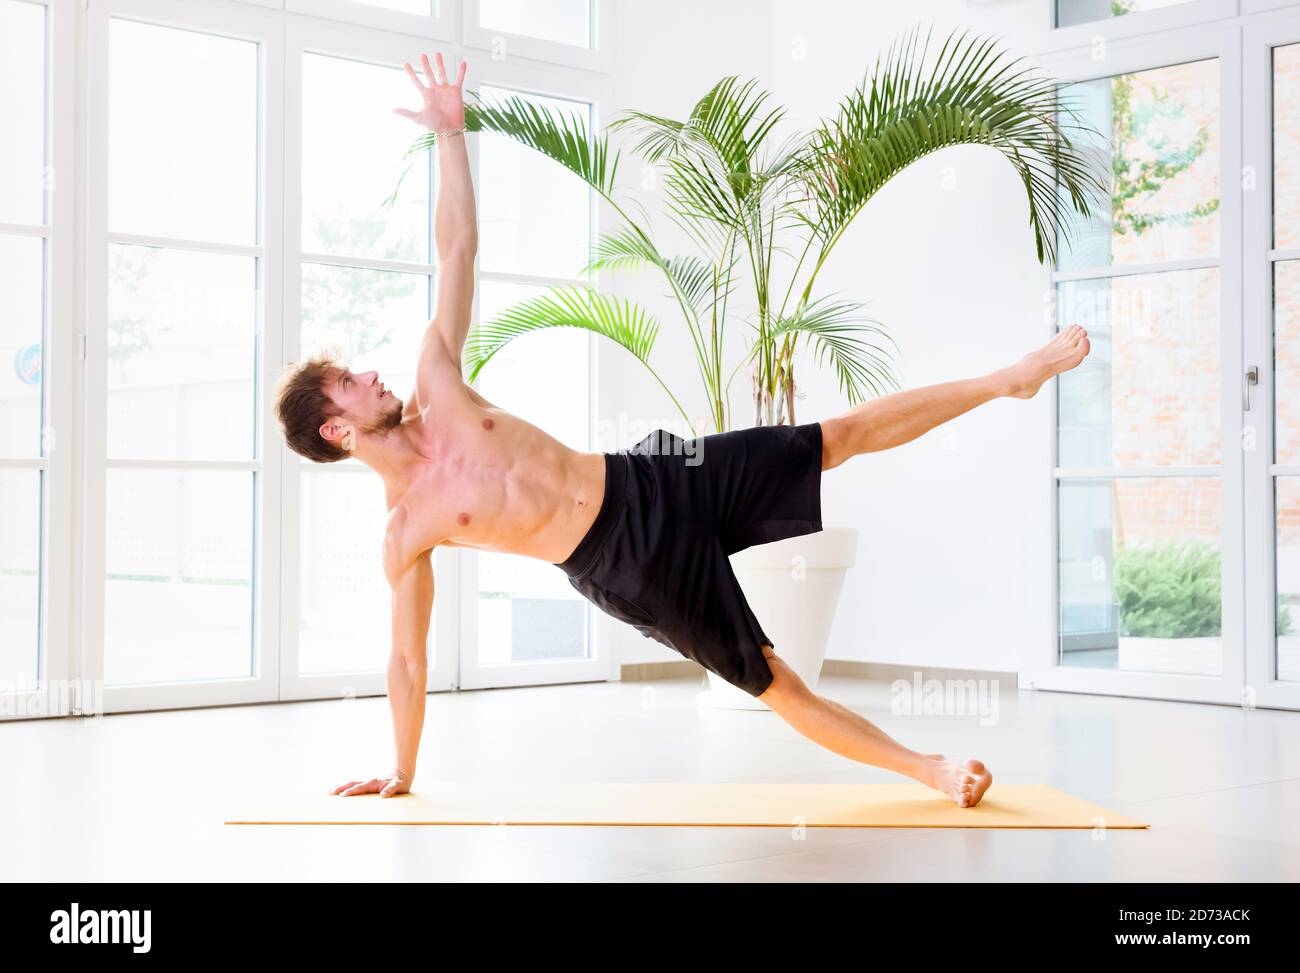 Mann, der eine seitliche Plank Yoga-Übung macht, um seine Kernmuskeln, Arm und Handgelenk in der Seitenansicht in einem High-Key-Fitnessstudio in einem Gesundheits- und Fitnesskonzept zu stärken Stockfoto